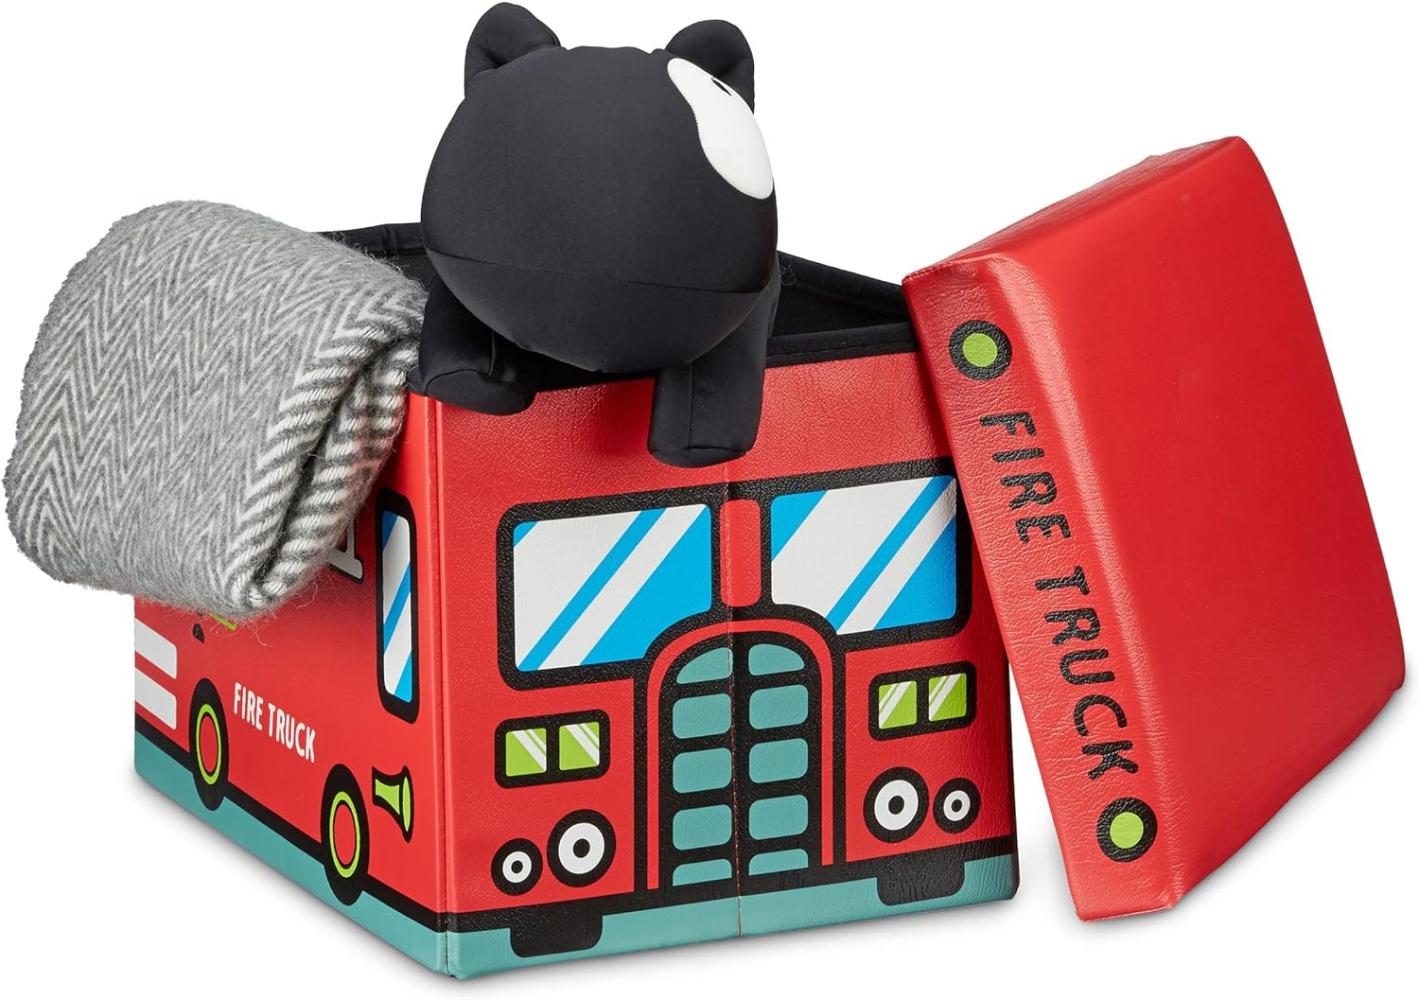 Relaxdays 'Feuerwehr' Faltbare Spielzeugkiste Bild 1